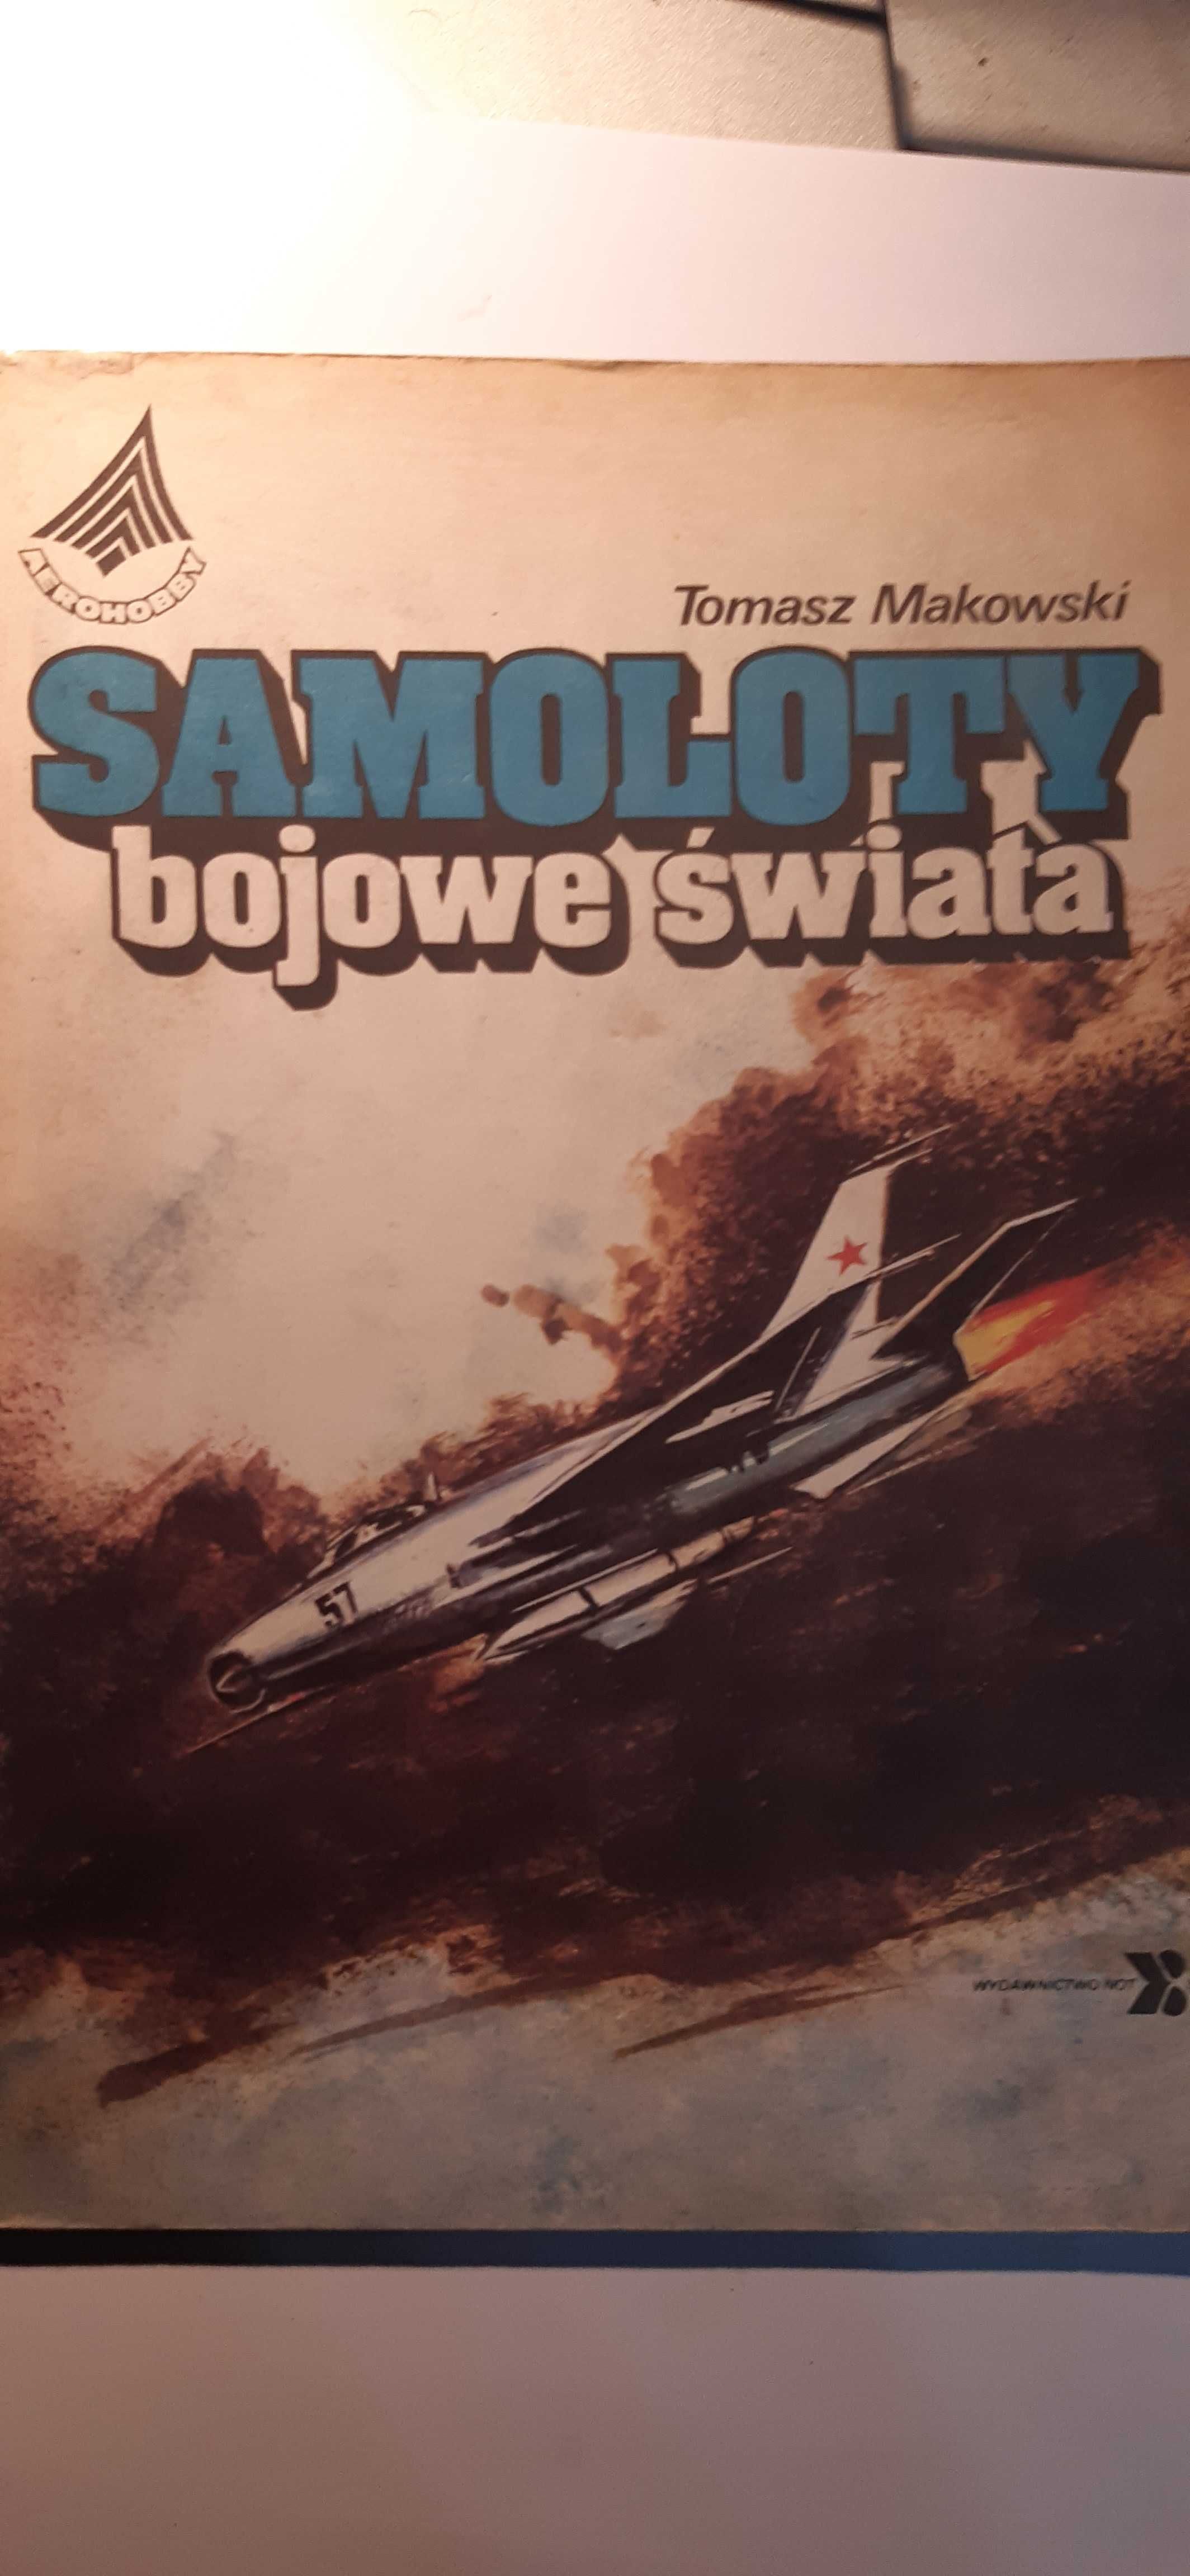 Samoloty bojowe świata - Tomasz Makowski